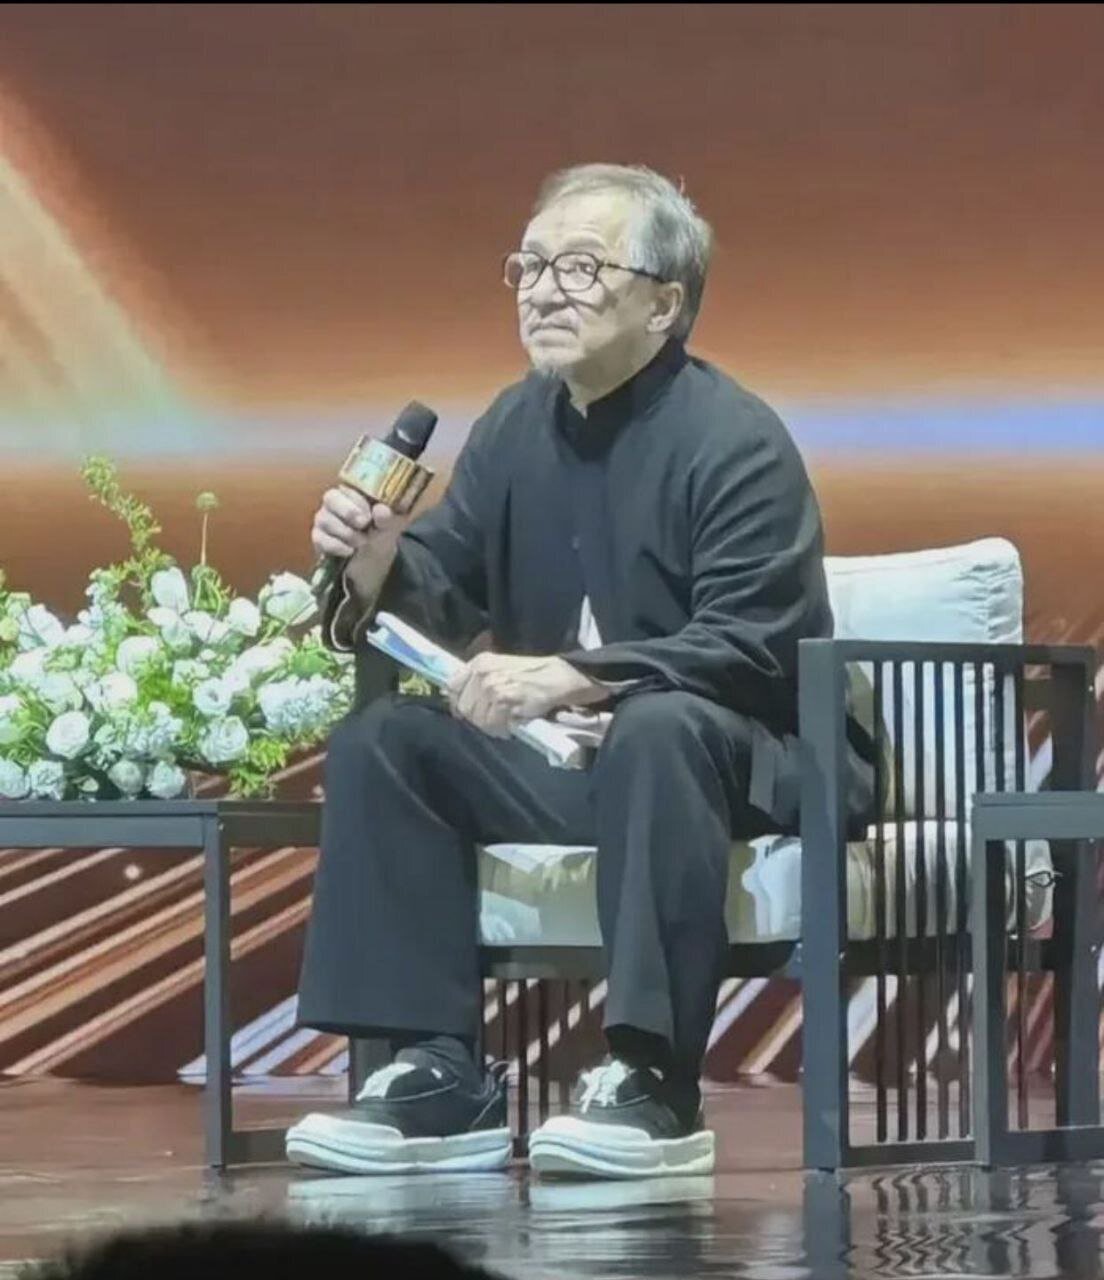 غوغای تصویر جکی چان در آستانه ۷۰ سالگی در دنیا | چهره جدید جکی چان را ببینید